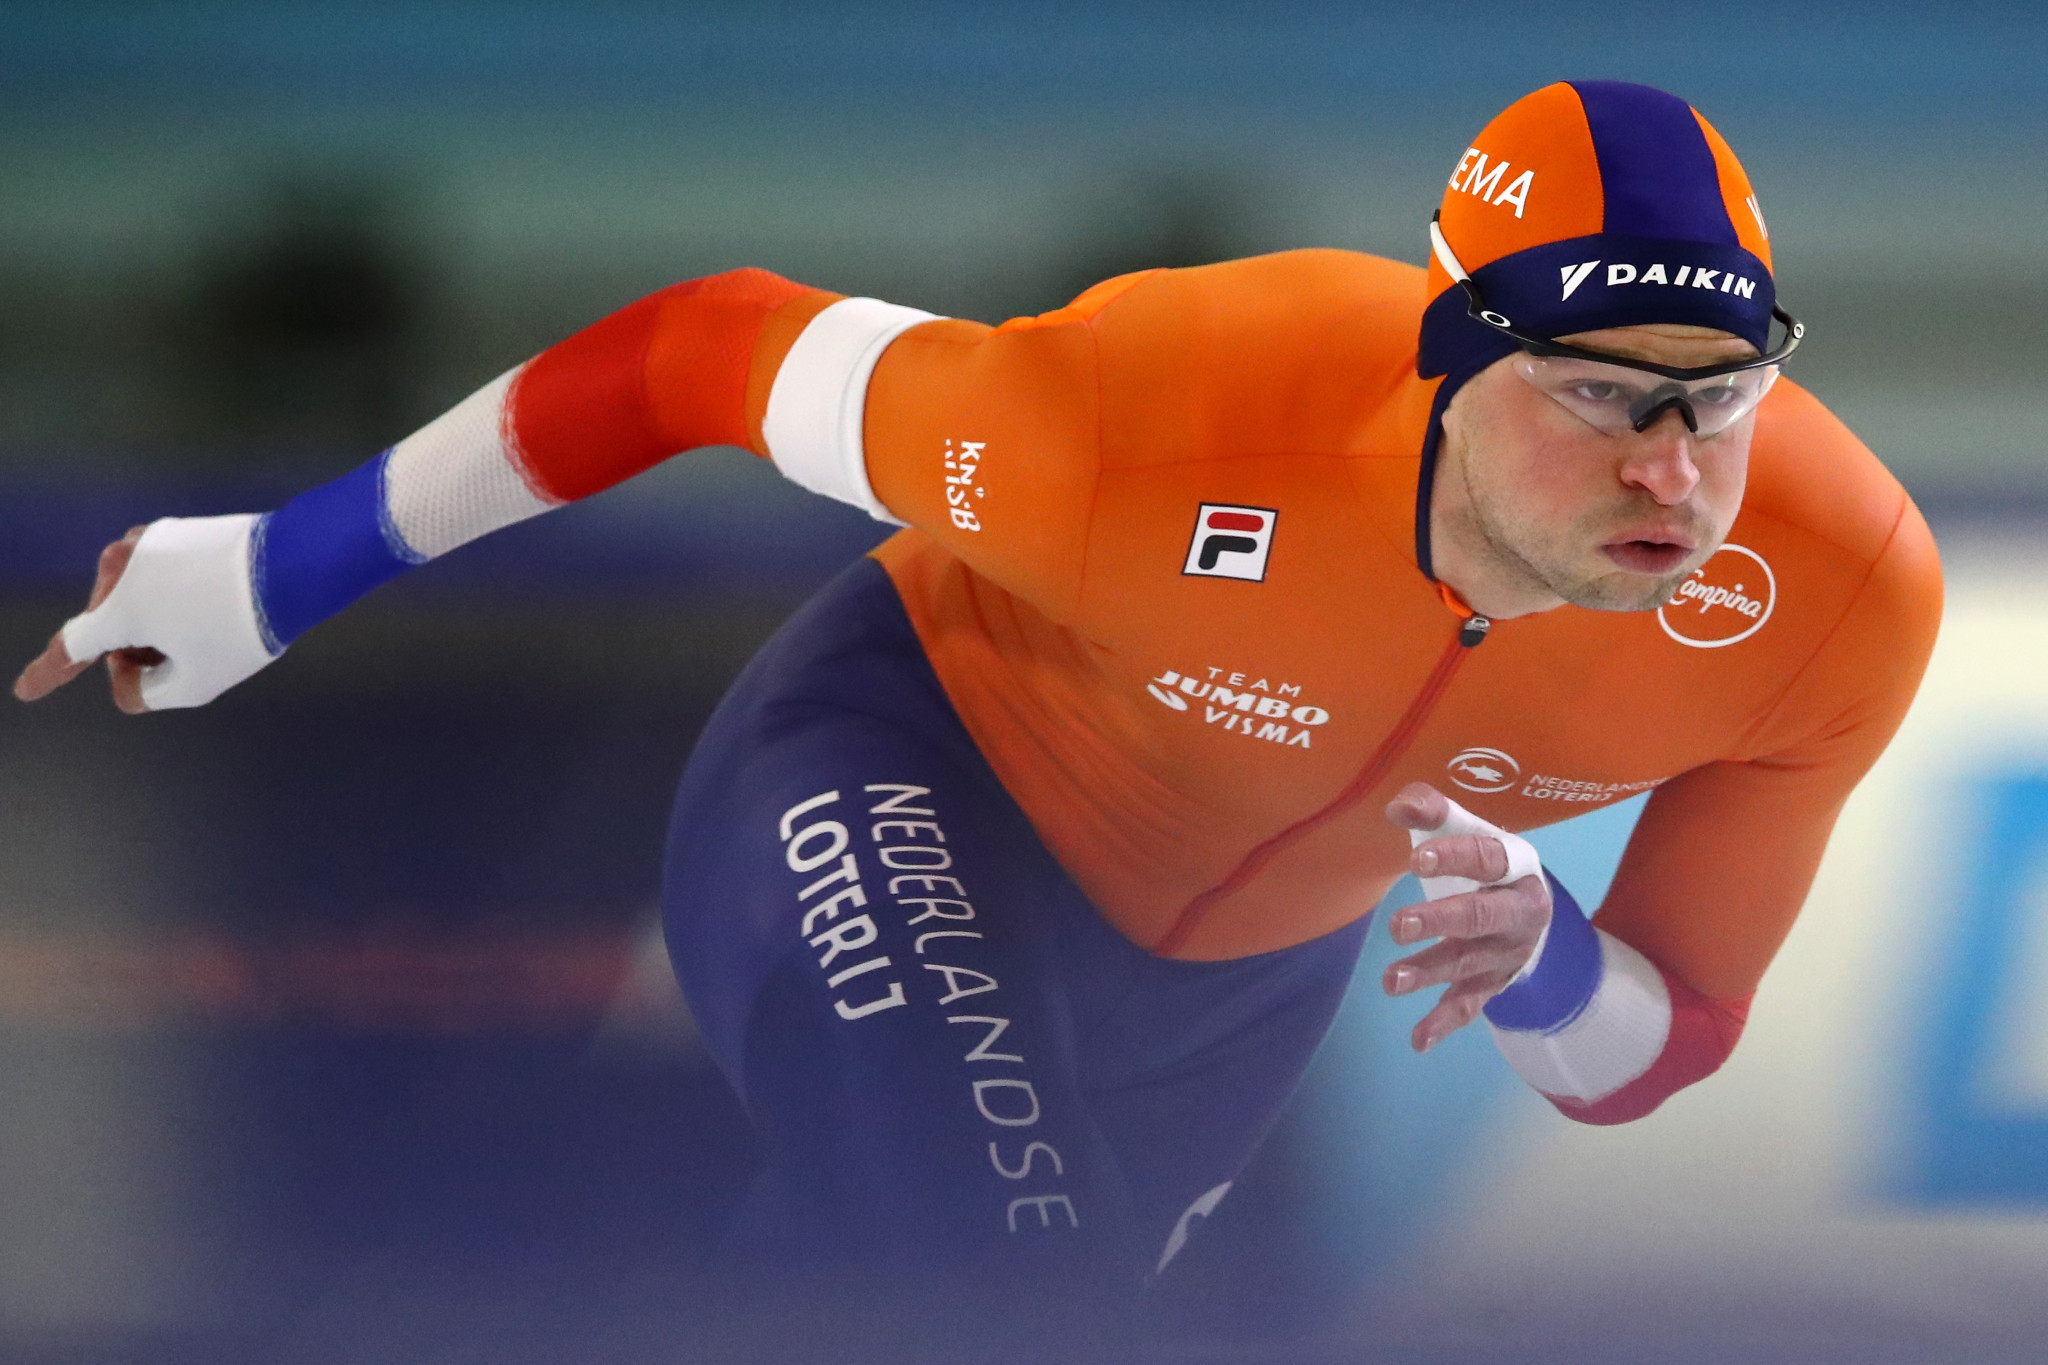 Kramer and Wüst to headline Dutch speed skating team at Beijing 2022